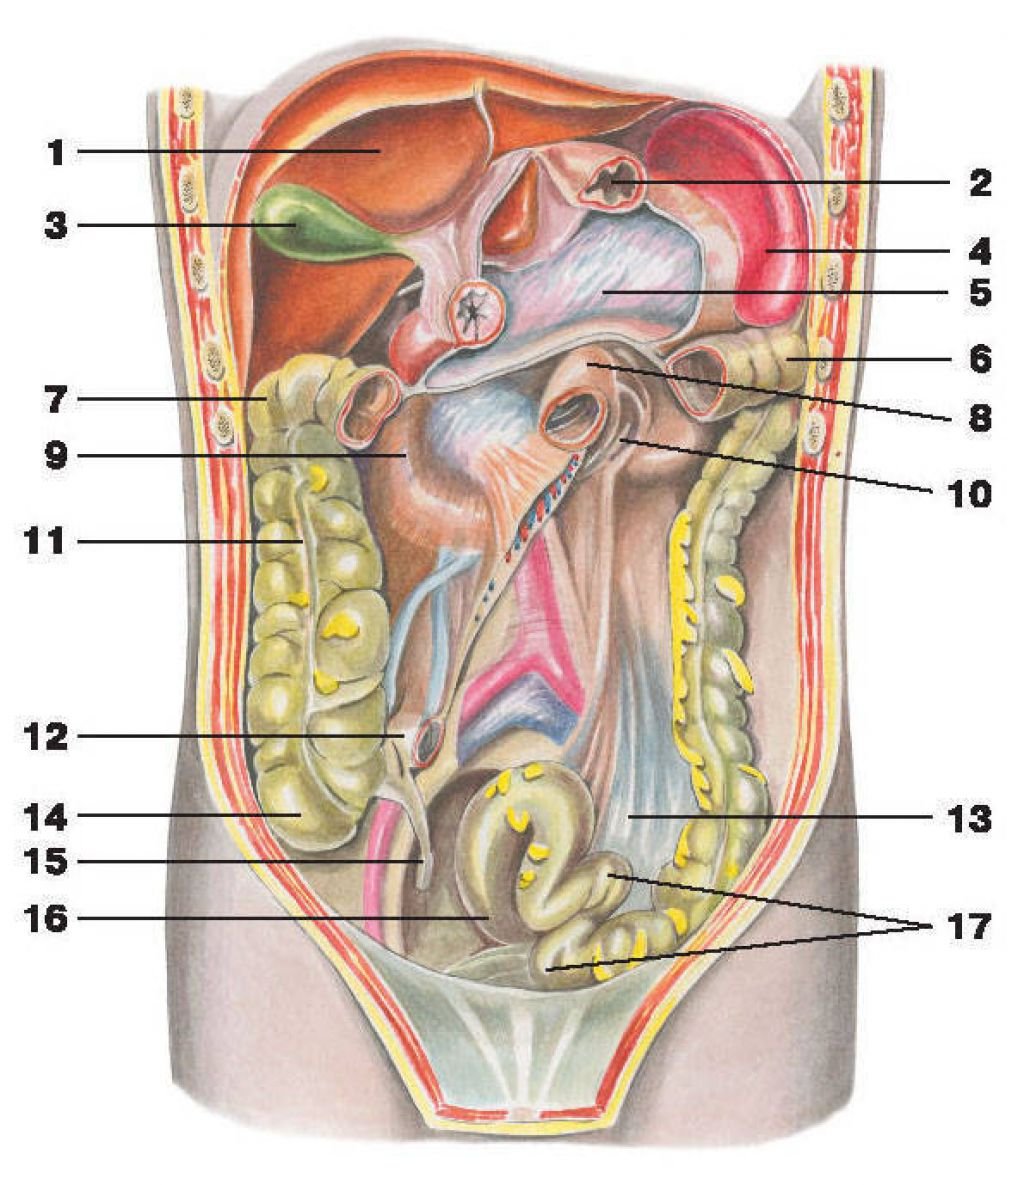 Фото анатомии внутренних органов человека мужчины. Анатомия органов брюшной полости. Анатомия брюшной полости человека мужчины органы. Анатомия брюшной полости женщины. Брюшина анатомия человека атлас.